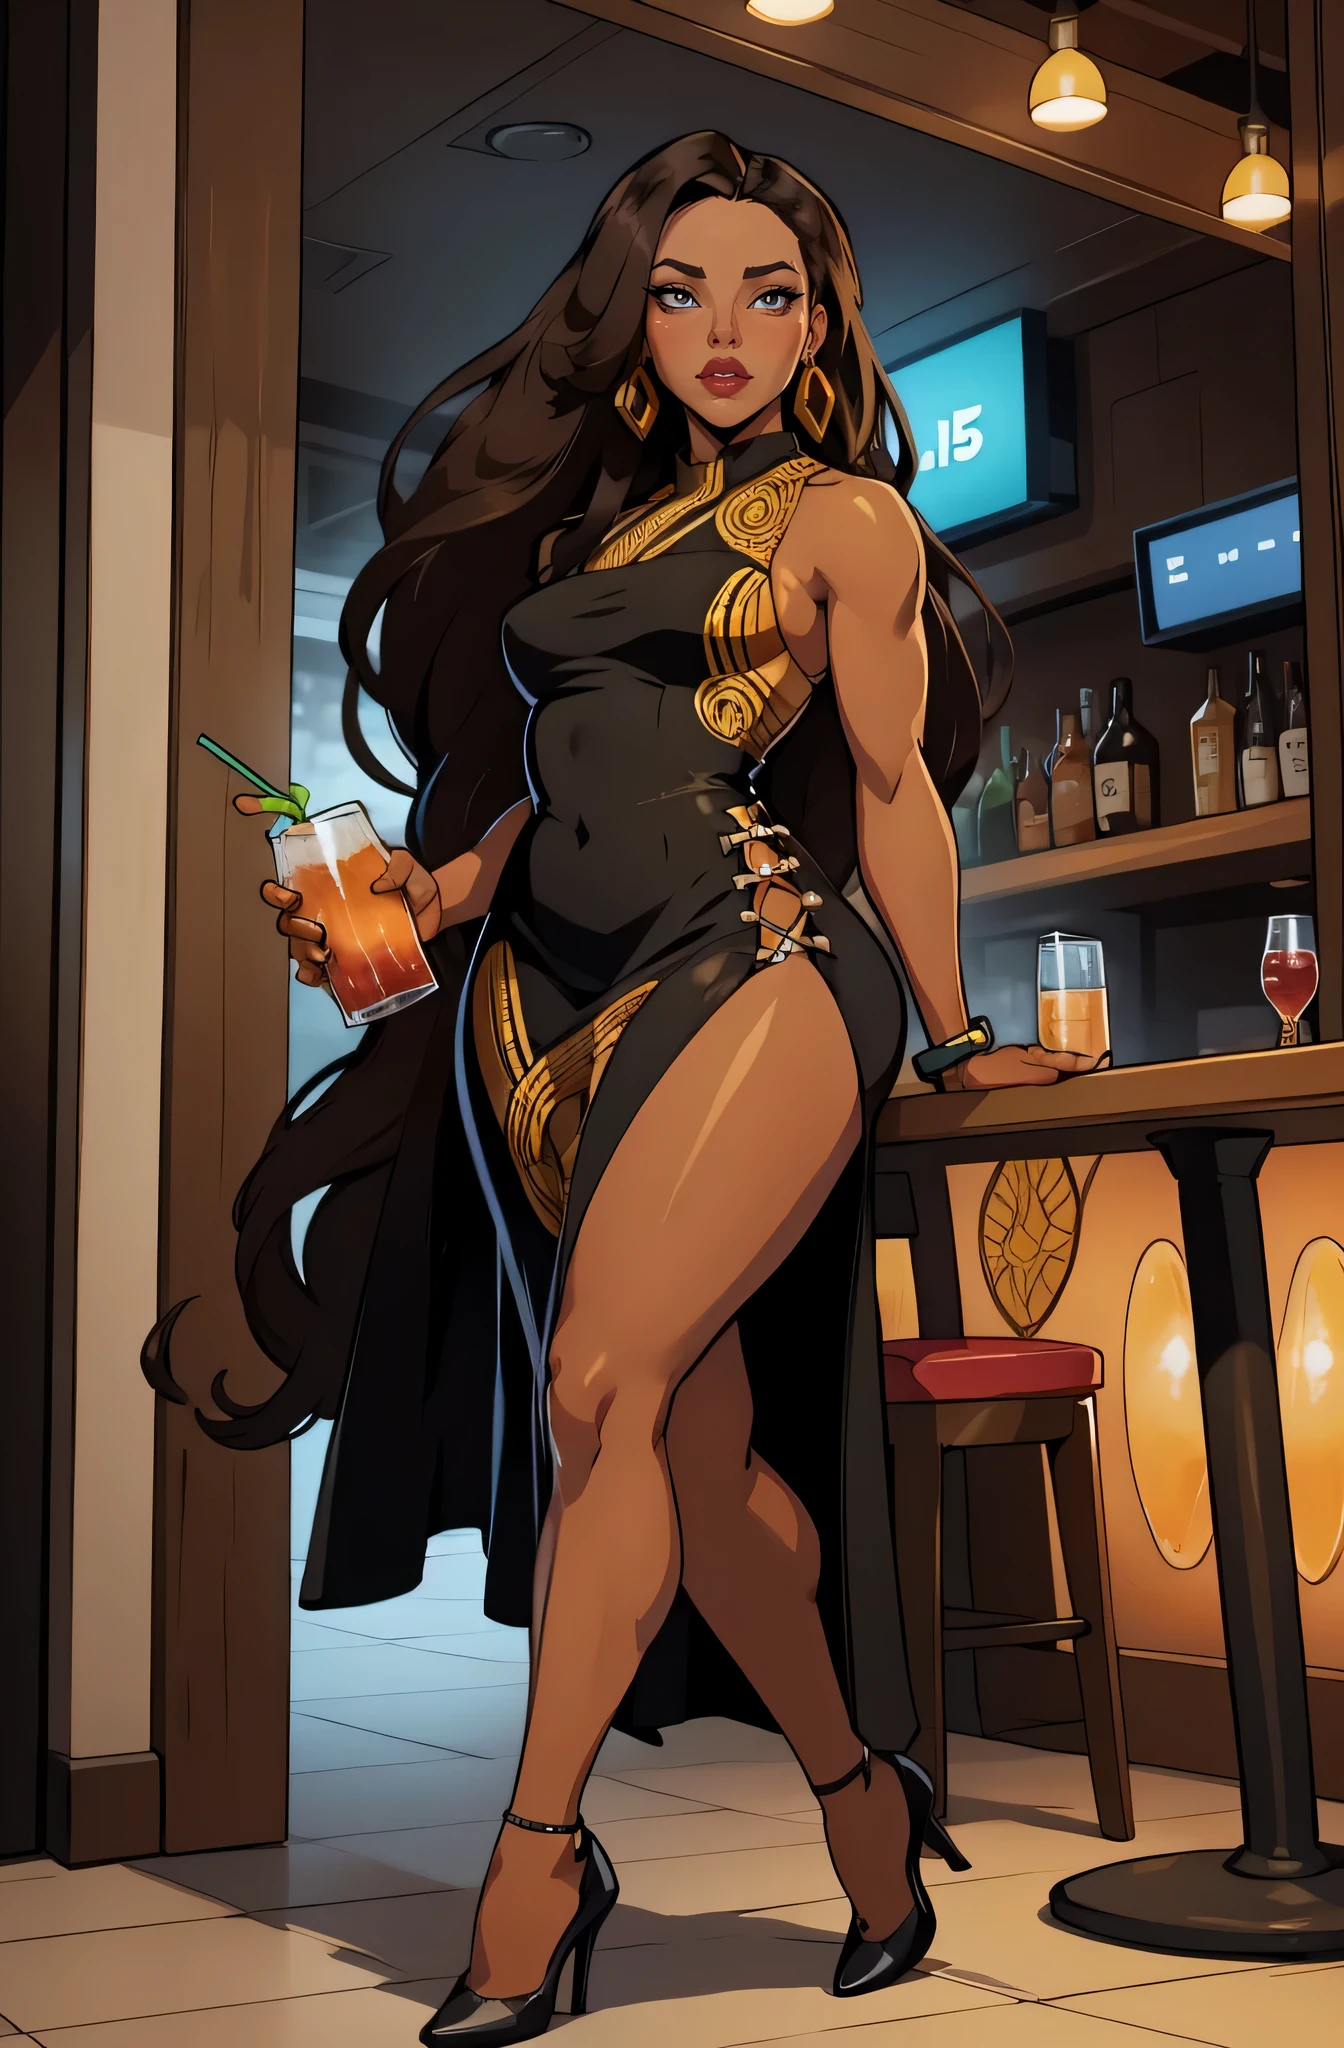 an einer Bar im Hintergrund, Cocktail trinken (eine 35-jährige Frau) braune Haut, Allein, 1 Mädchen, Porträt, afrikanische lange haare, Super detailliert, moderner Stil, direkter Blick, Ganzkörperansicht mit schwarzem Kleid